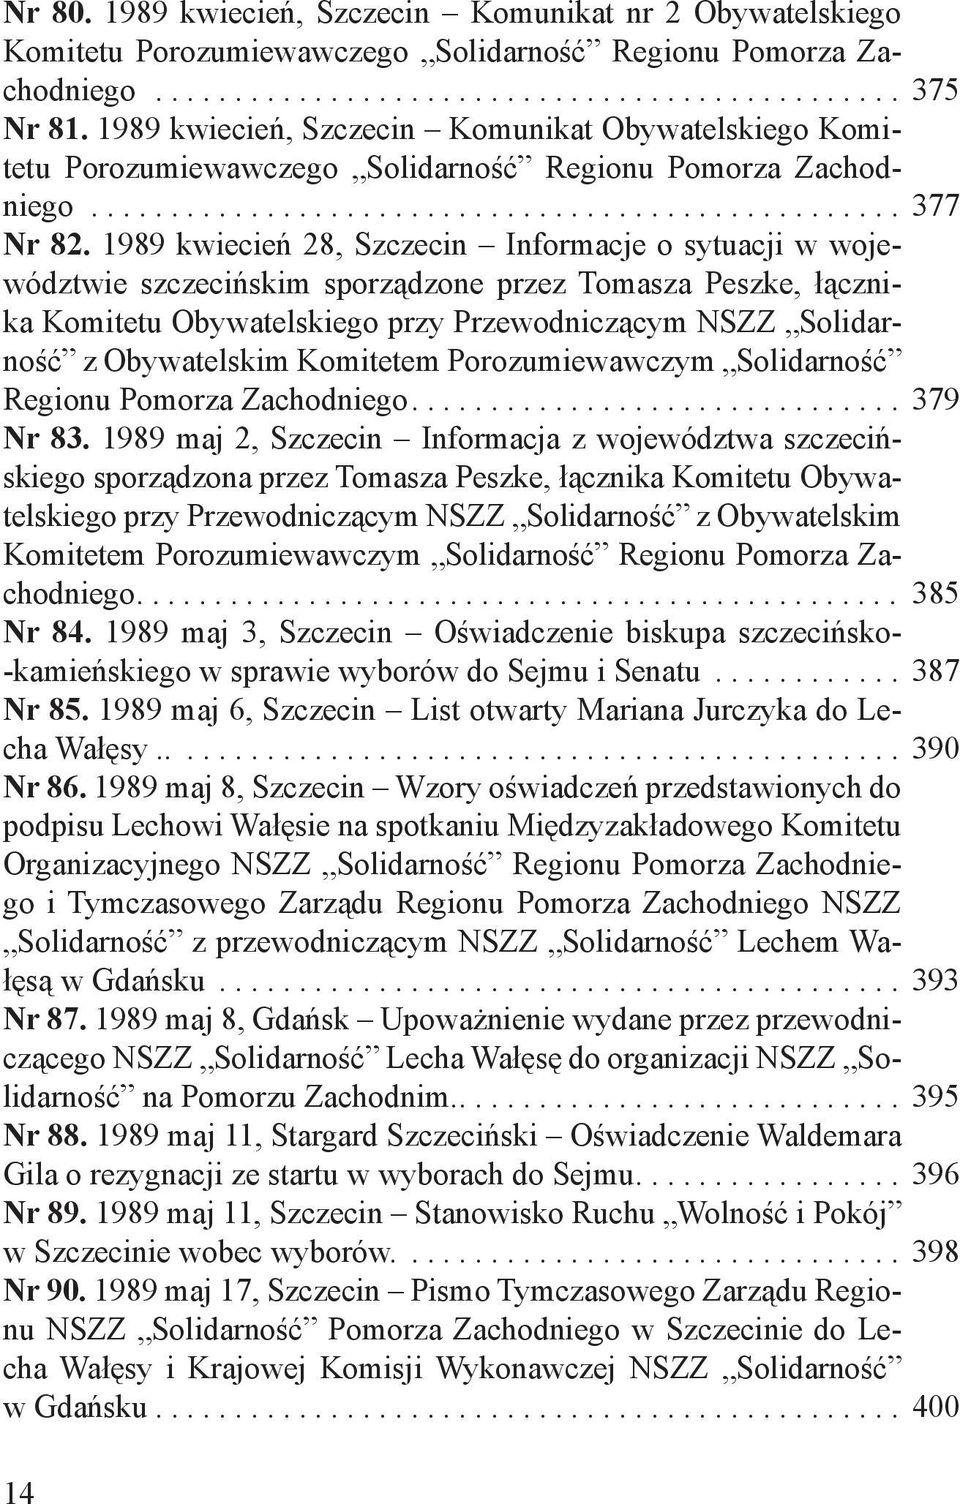 1989 kwiecień 28, Szczecin Informacje o sytuacji w województwie szczecińskim sporządzone przez Tomasza Peszke, łącznika Komitetu Obywatelskiego przy Przewodniczącym NSZZ Solidarność z Obywatelskim